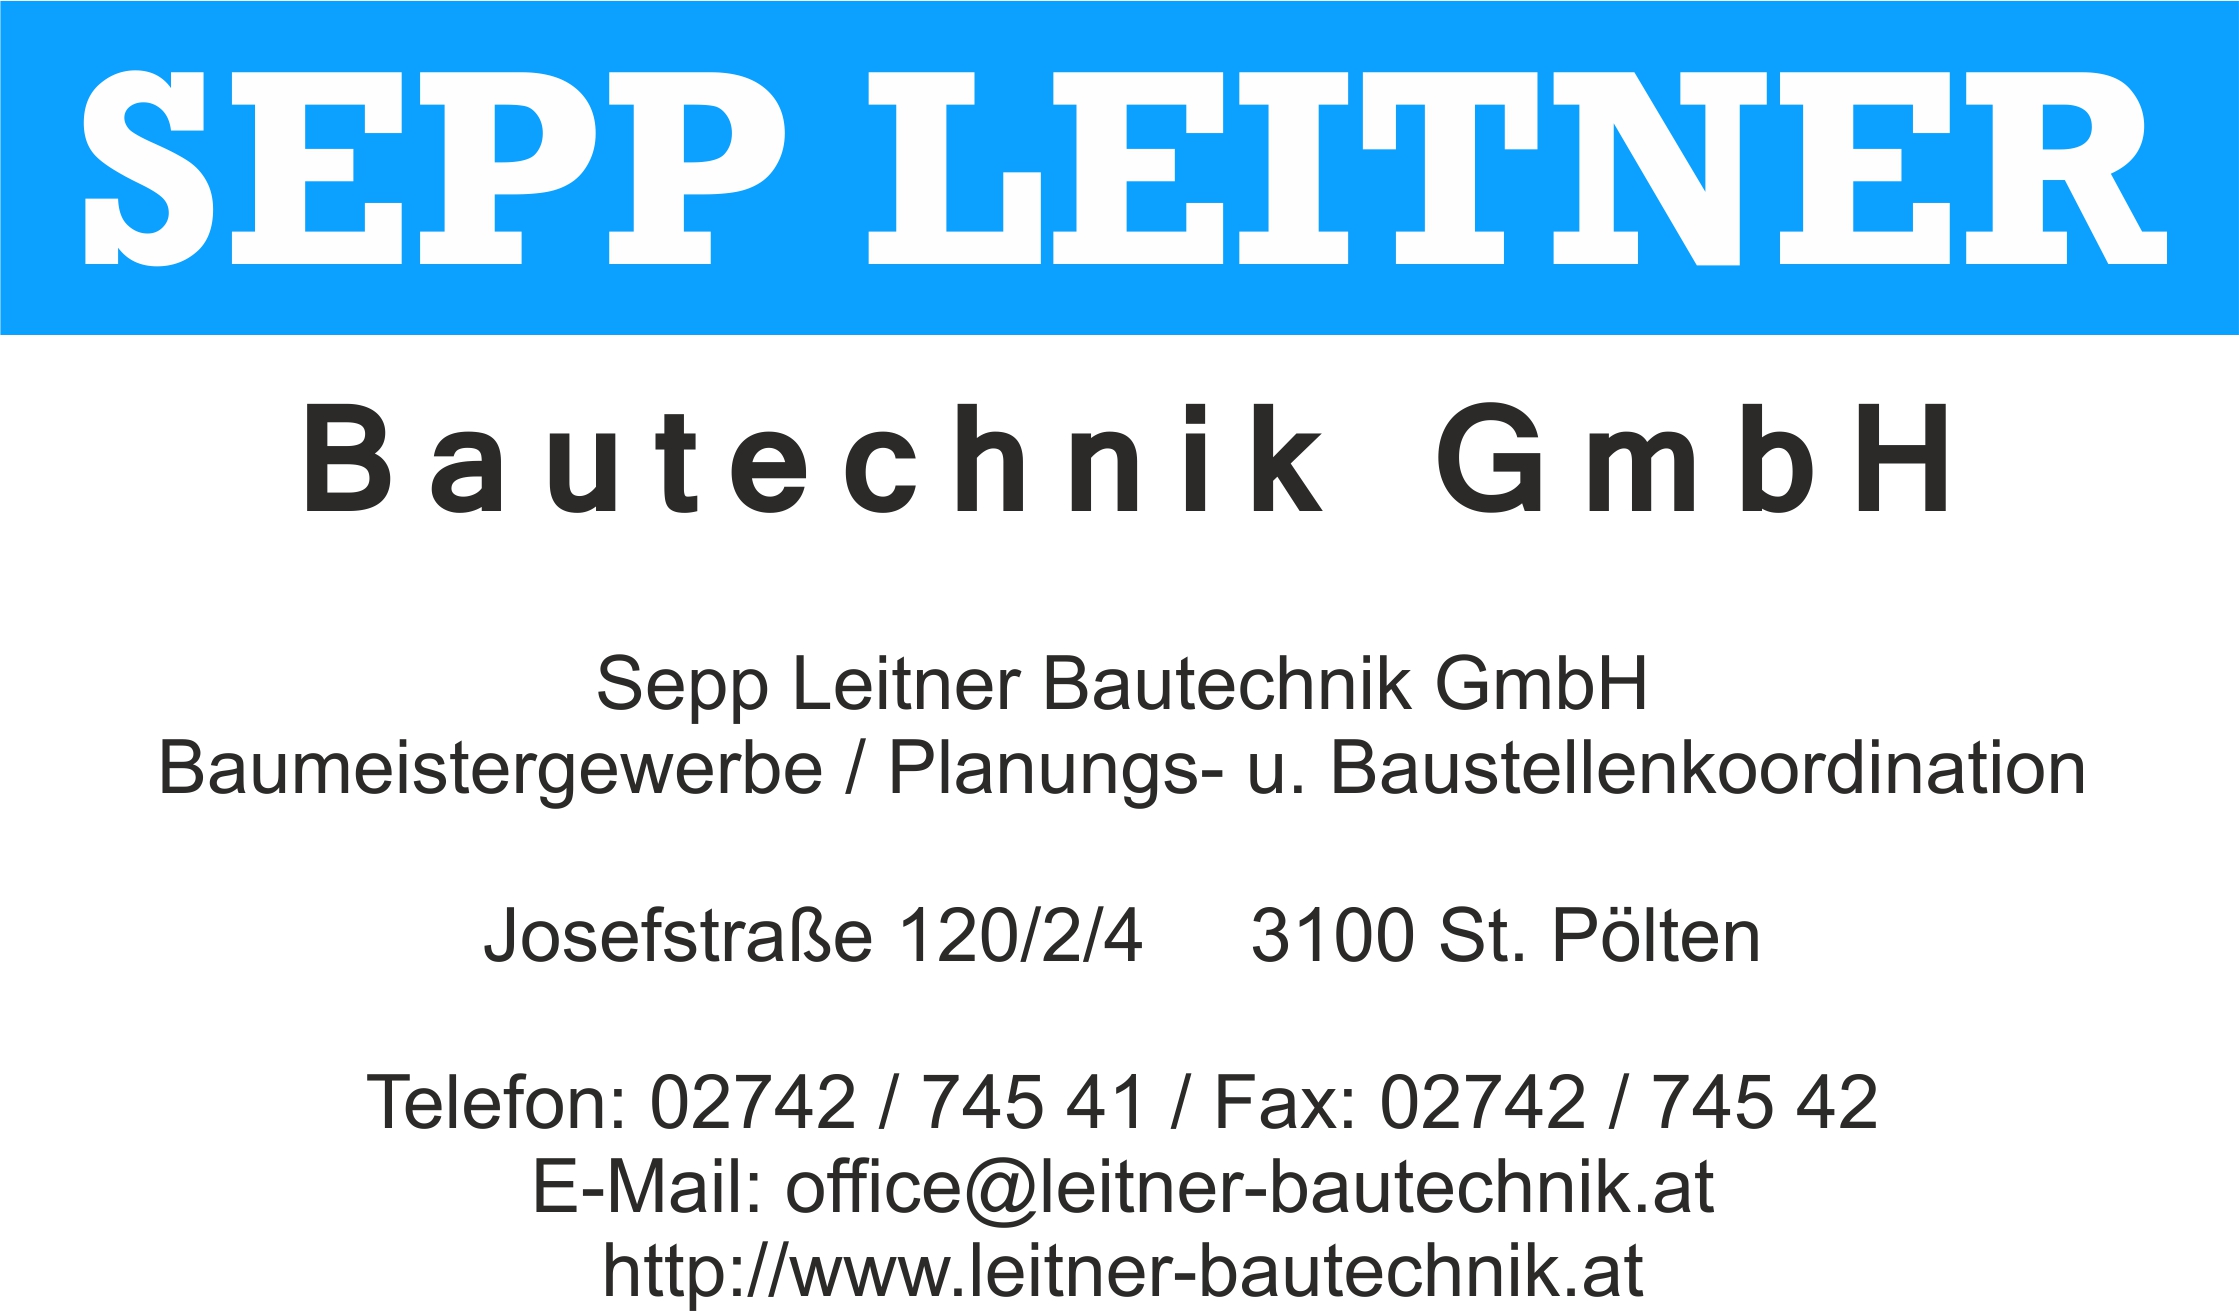 Sepp leitner bautechnik GmbH